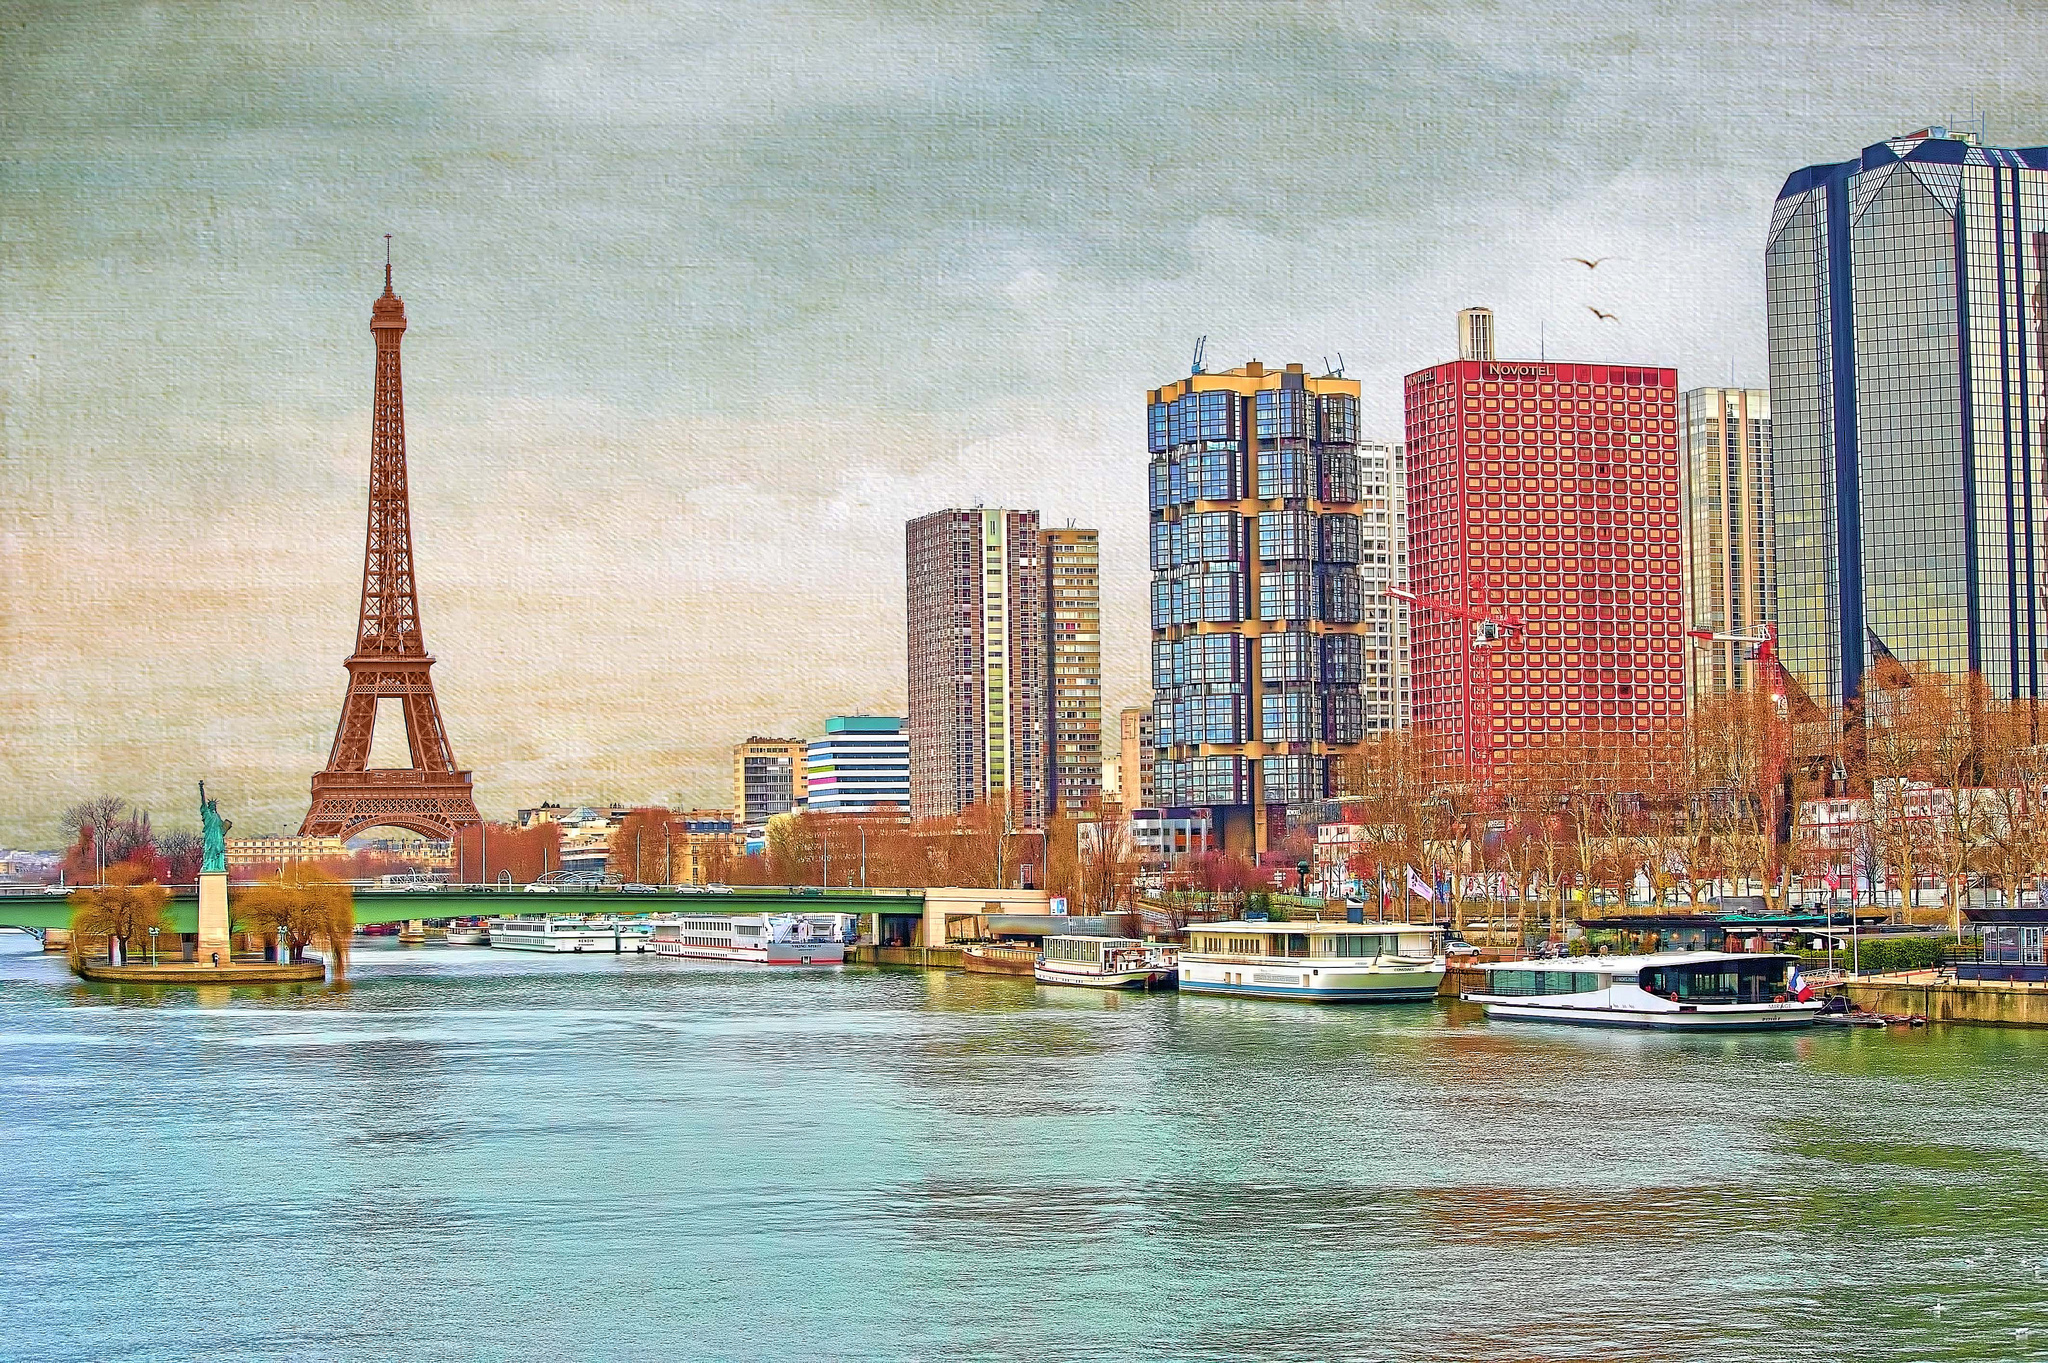 Скачать обои бесплатно Река, Париж, Эйфелева Башня, Город, Франция, Здание, Картина, Небоскрёб, Художественные картинка на рабочий стол ПК